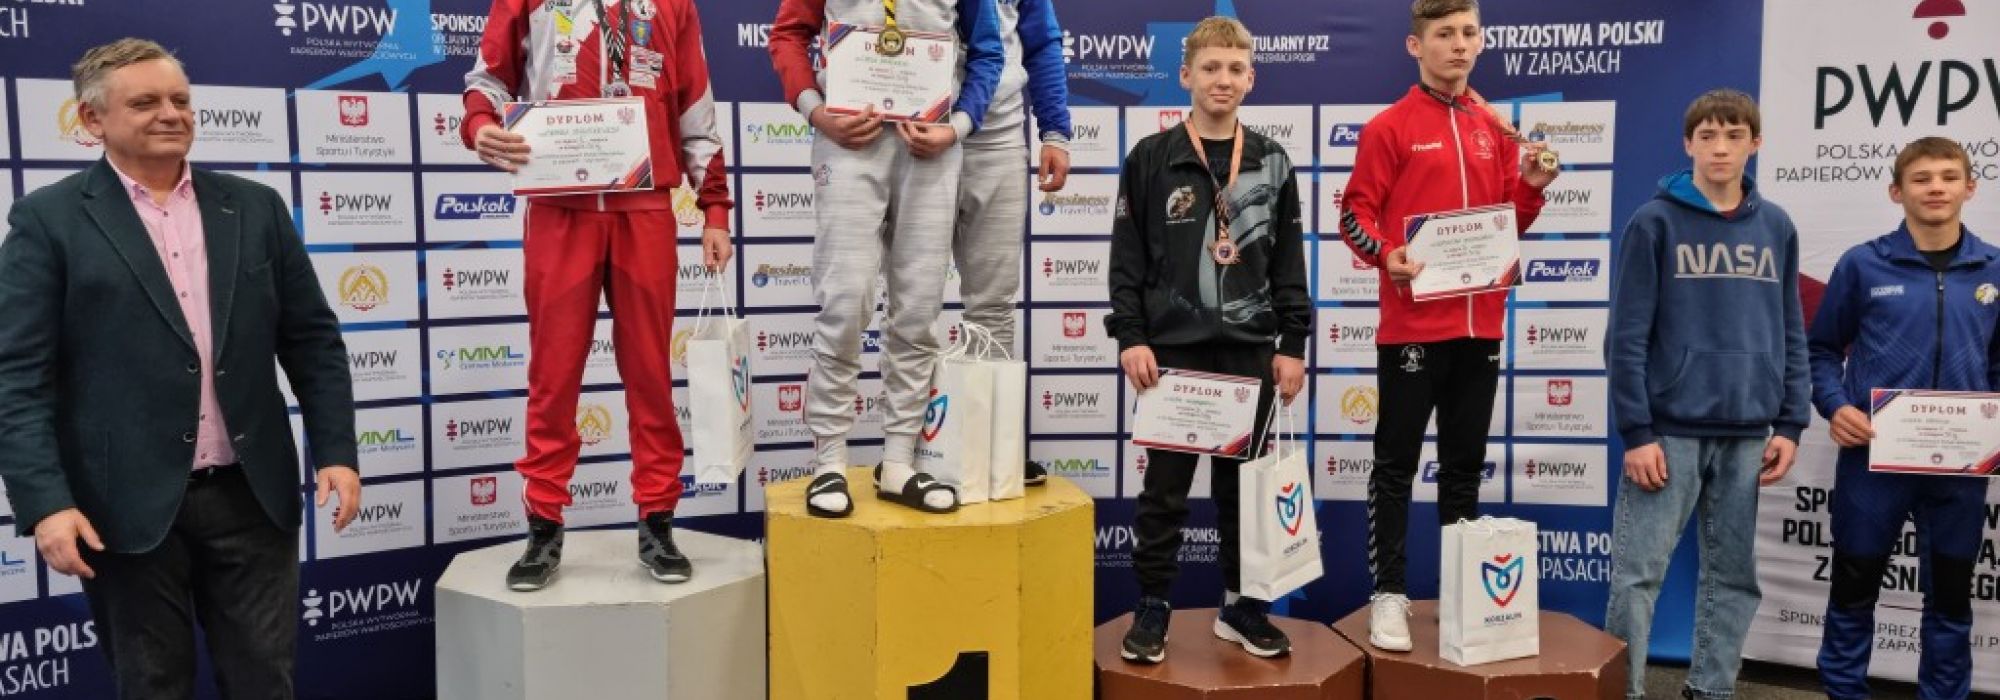 Brązowy medal zawodnika Guliwera na Mistrzostwach Polski Młodzików